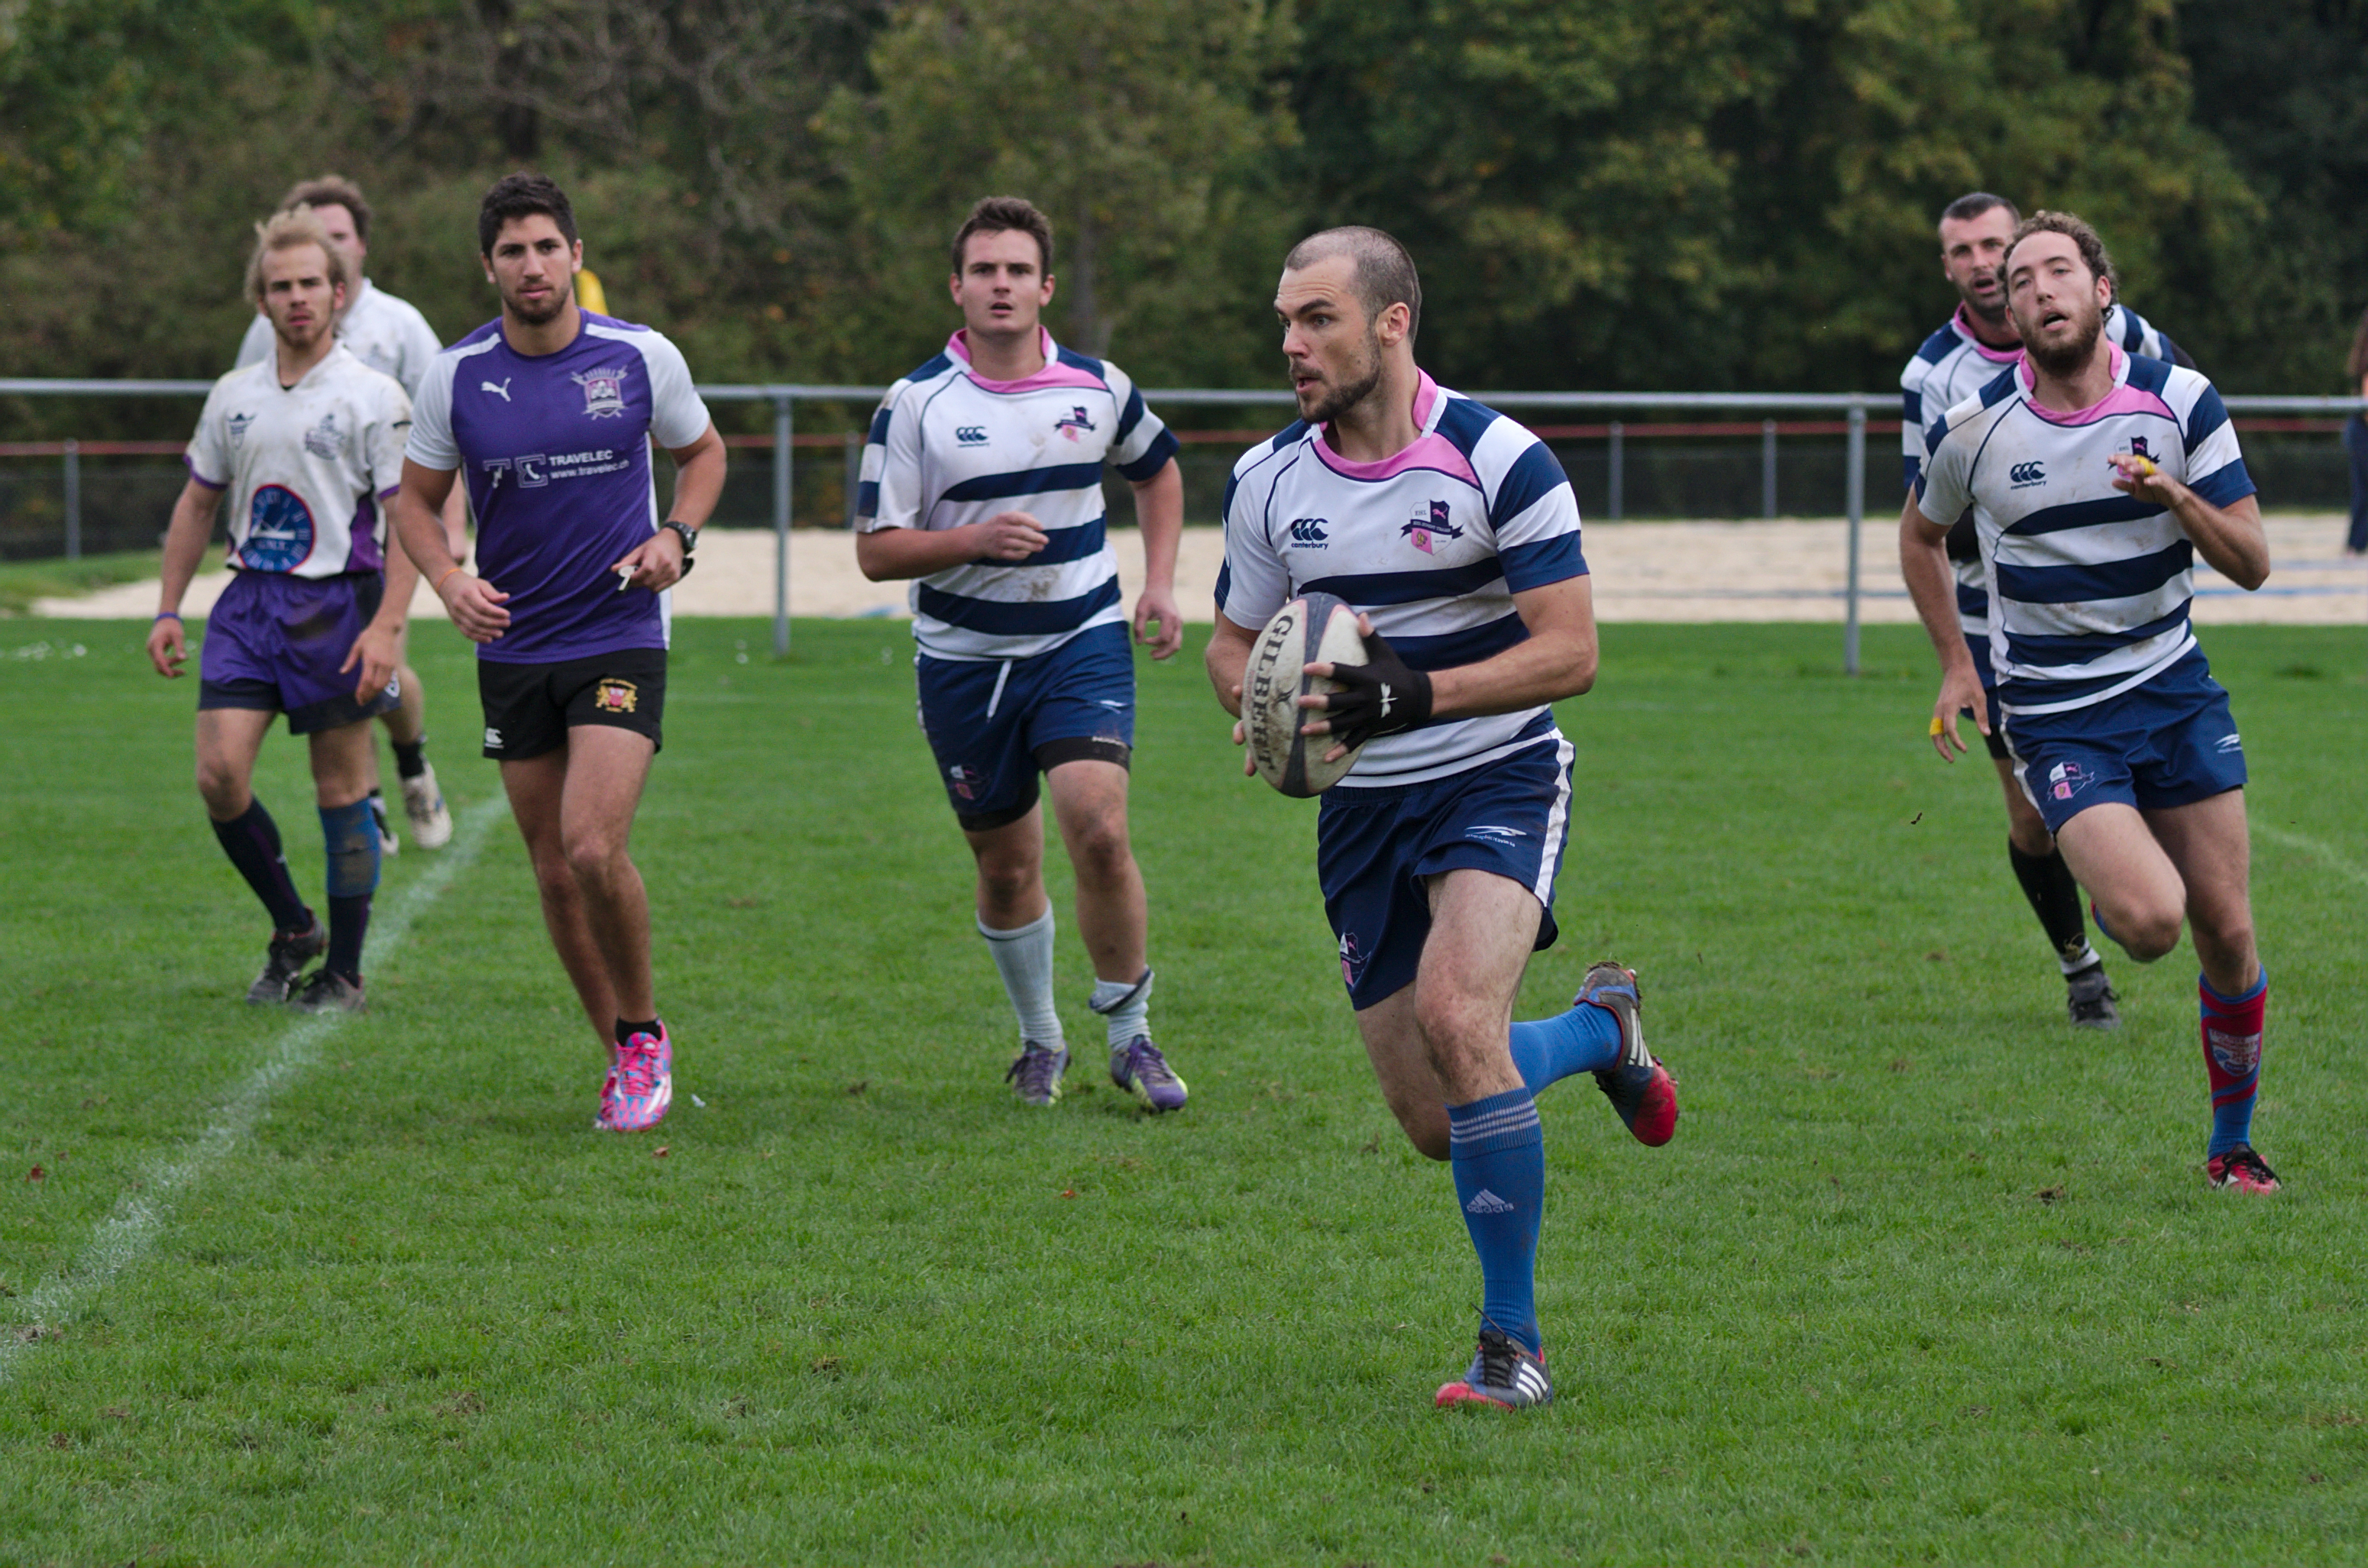 Tournoi de rugby à 7 - 20141012 - Genève - 31